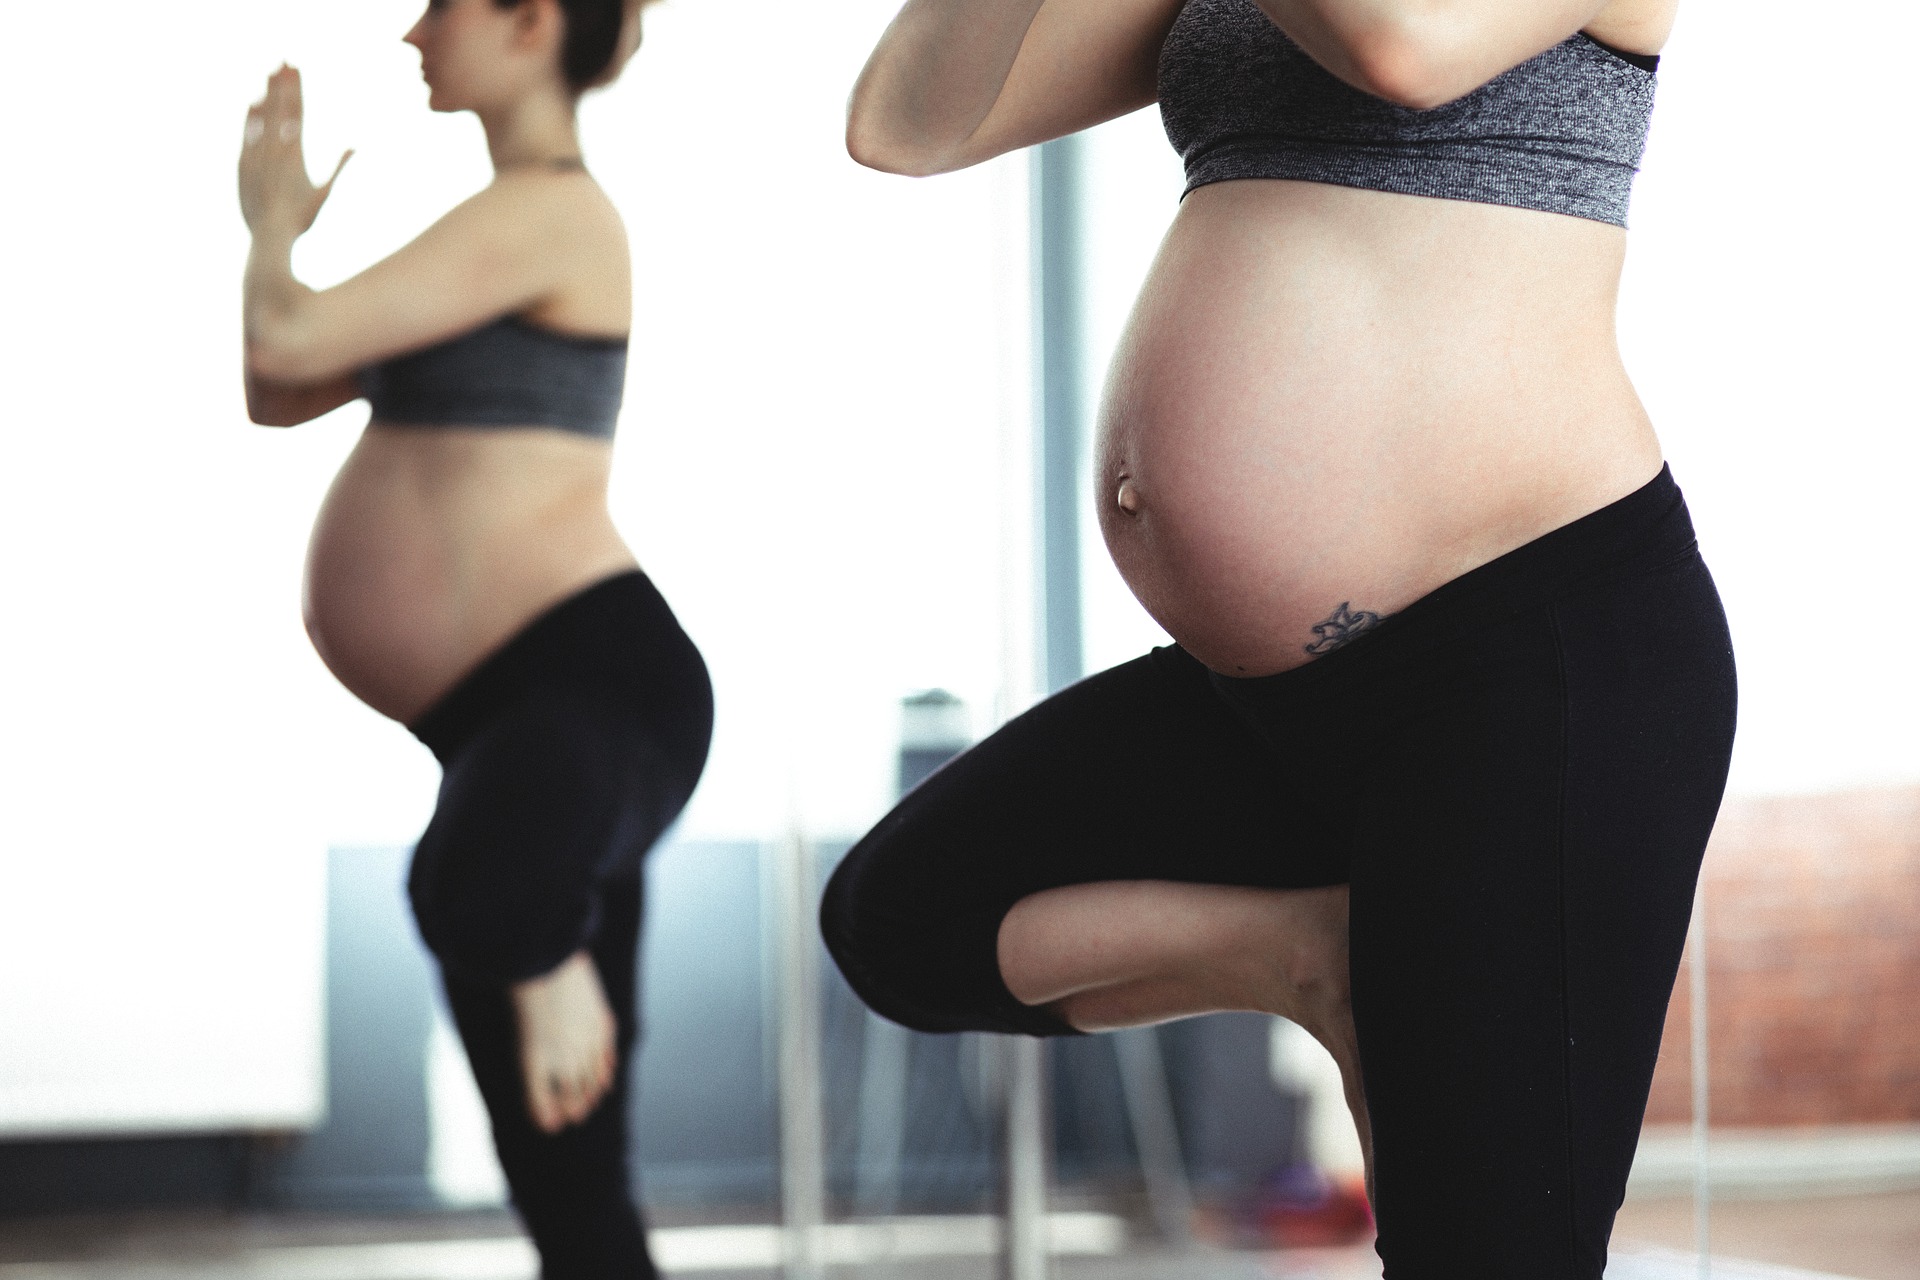 Sportul in timpul sarcinii